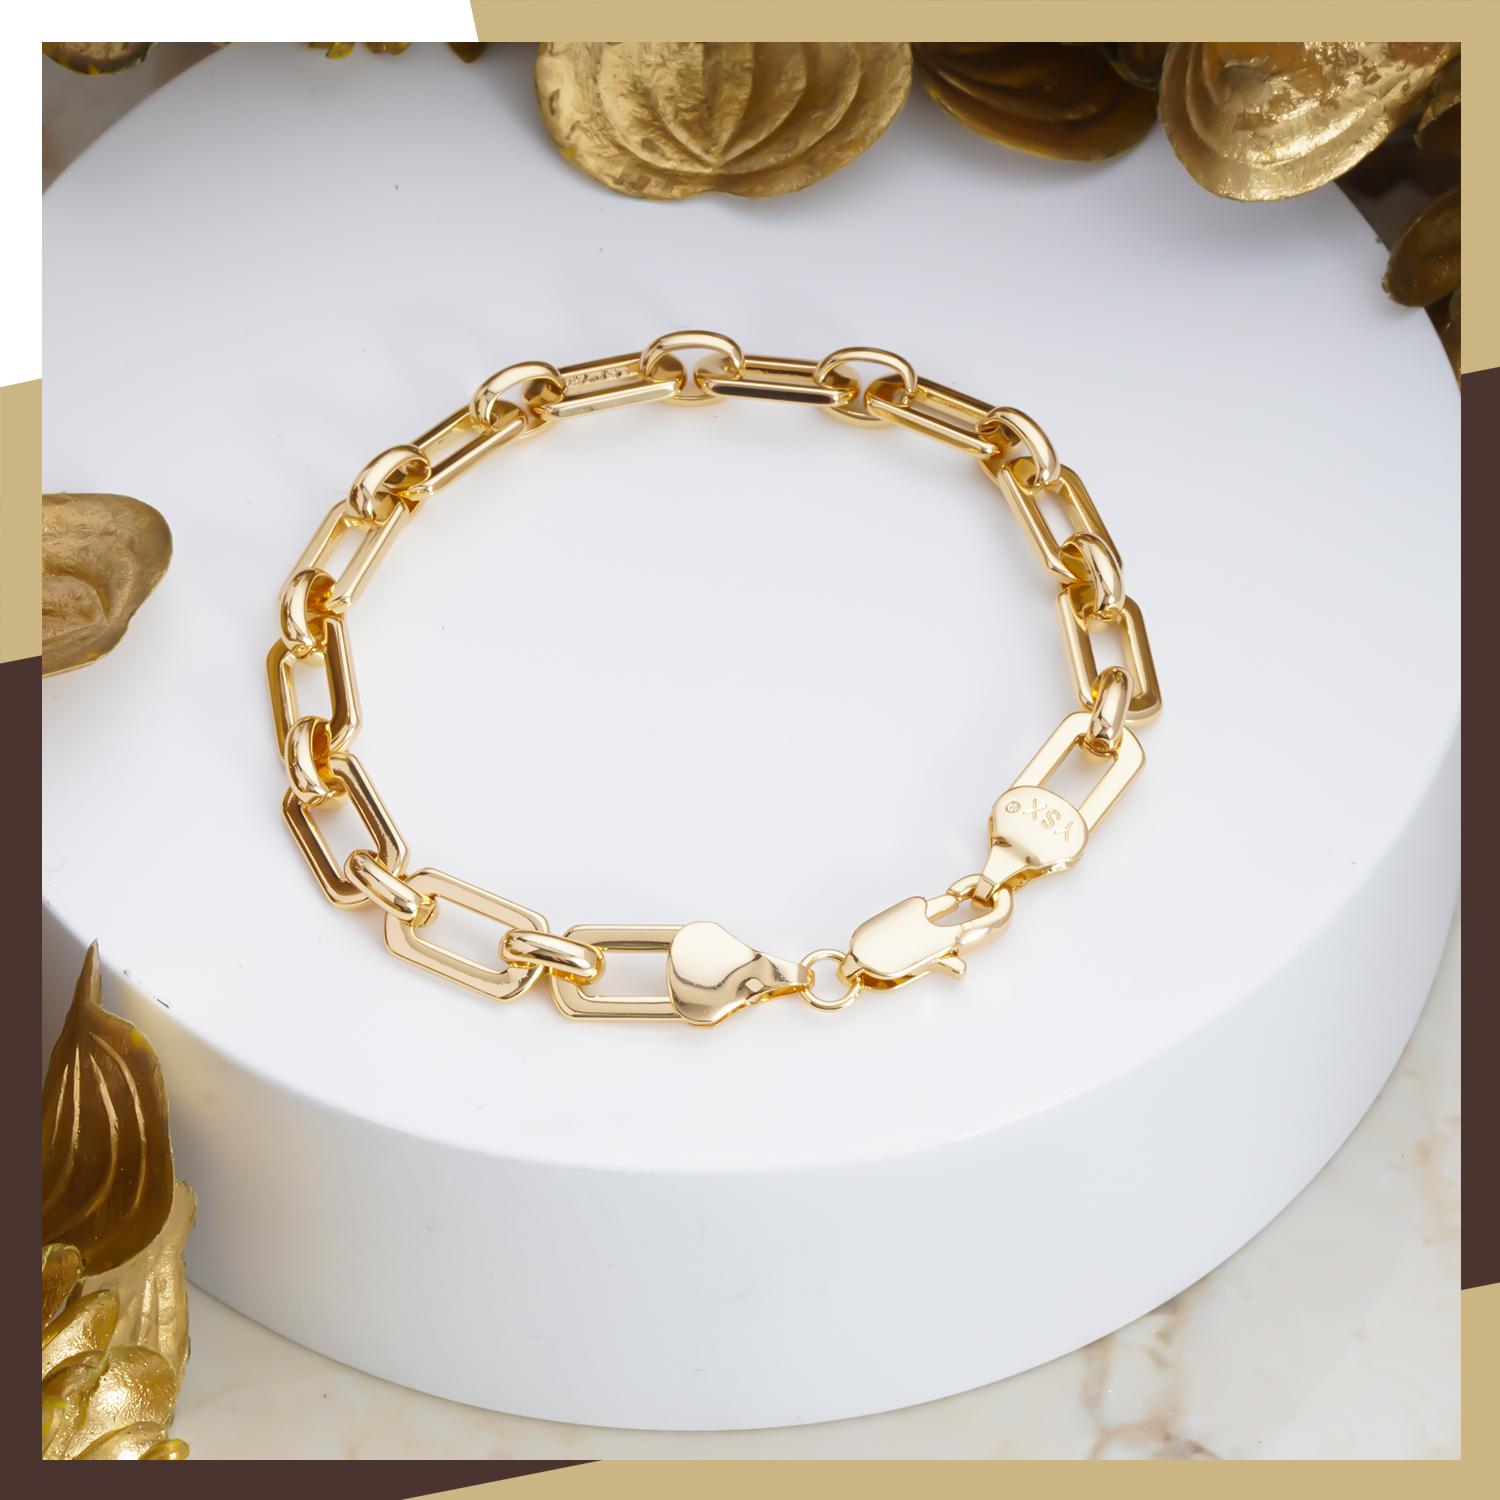 Lắc Tay Nam Nữ Cặp Đôi Mạ Vàng 18k là món quà tuyệt vời để tặng cho bạn đời của mình. Với thiết kế đẹp mắt và chất liệu bền bỉ, chiếc lắc này sẽ trở thành một biểu tượng tình yêu đầy ý nghĩa trong khoảnh khắc quan trọng của cuộc đời.